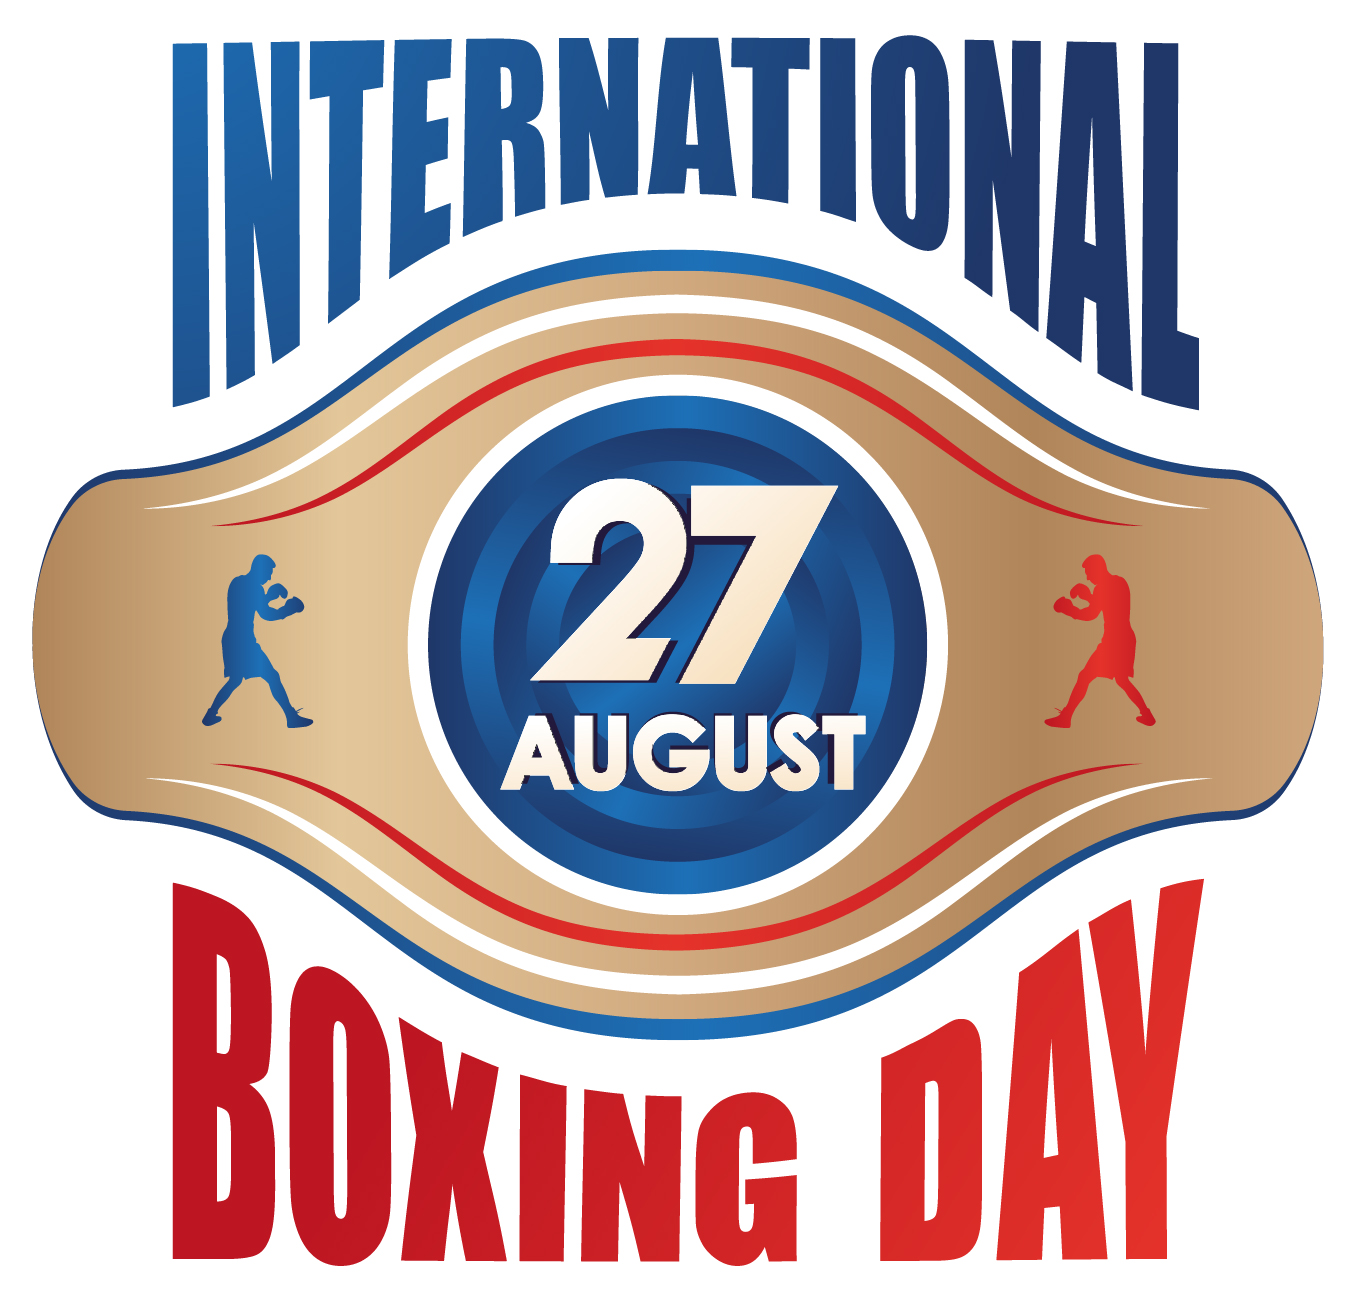 Una settimana all'International Boxing Day - INFO PER PARTECIPARE AL CONTEST CON IN PALIO DEI GUANTONI 